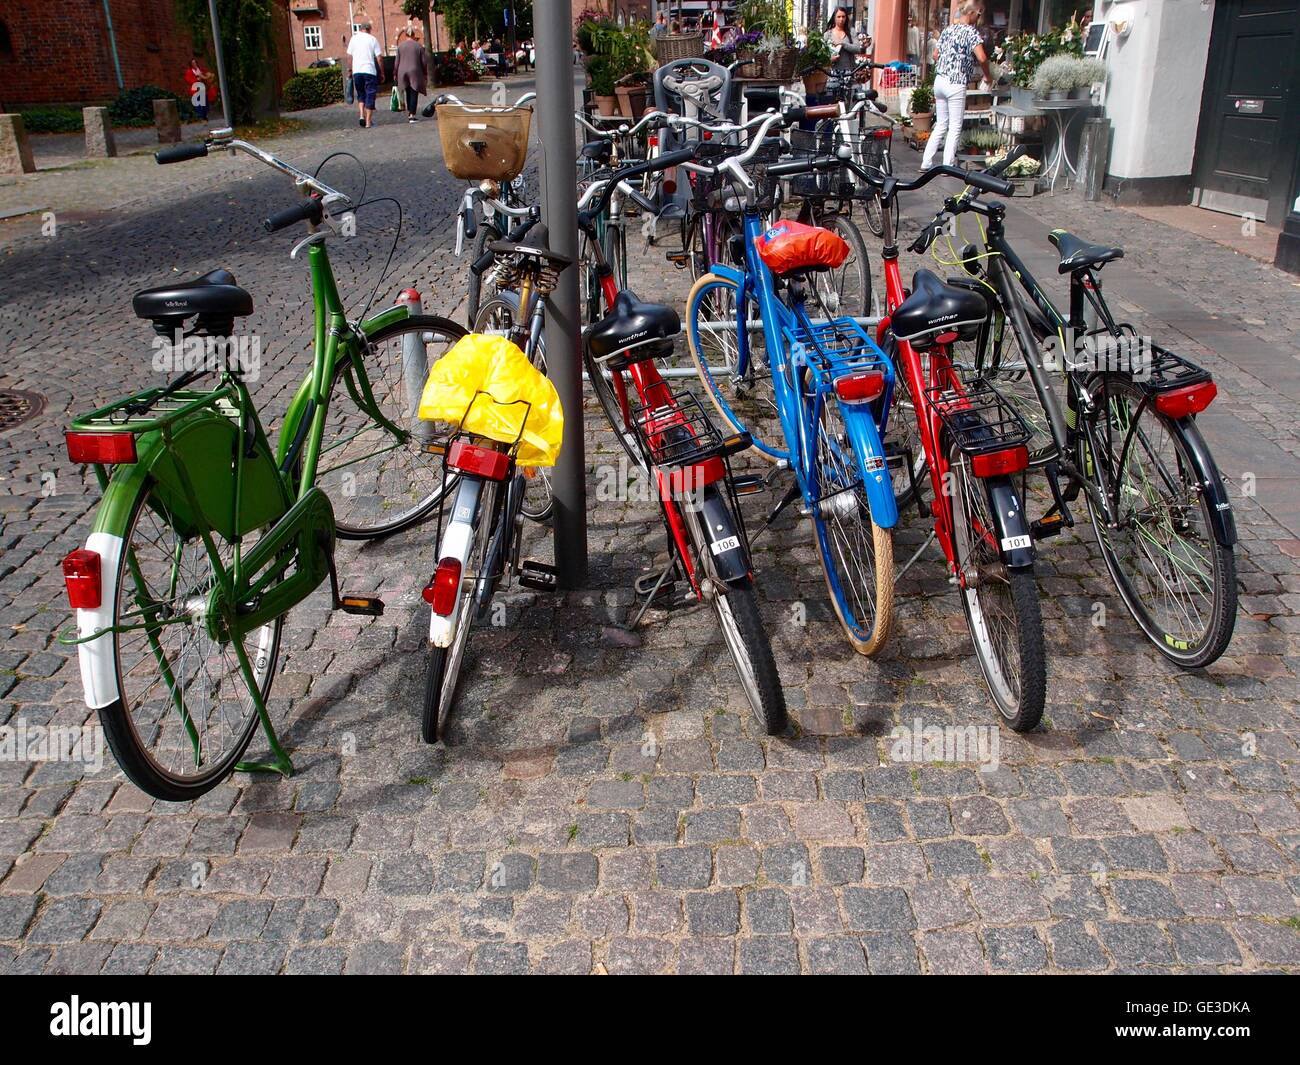 Vélo avec des vélos en stationnement, sur une rue pavée. Banque D'Images